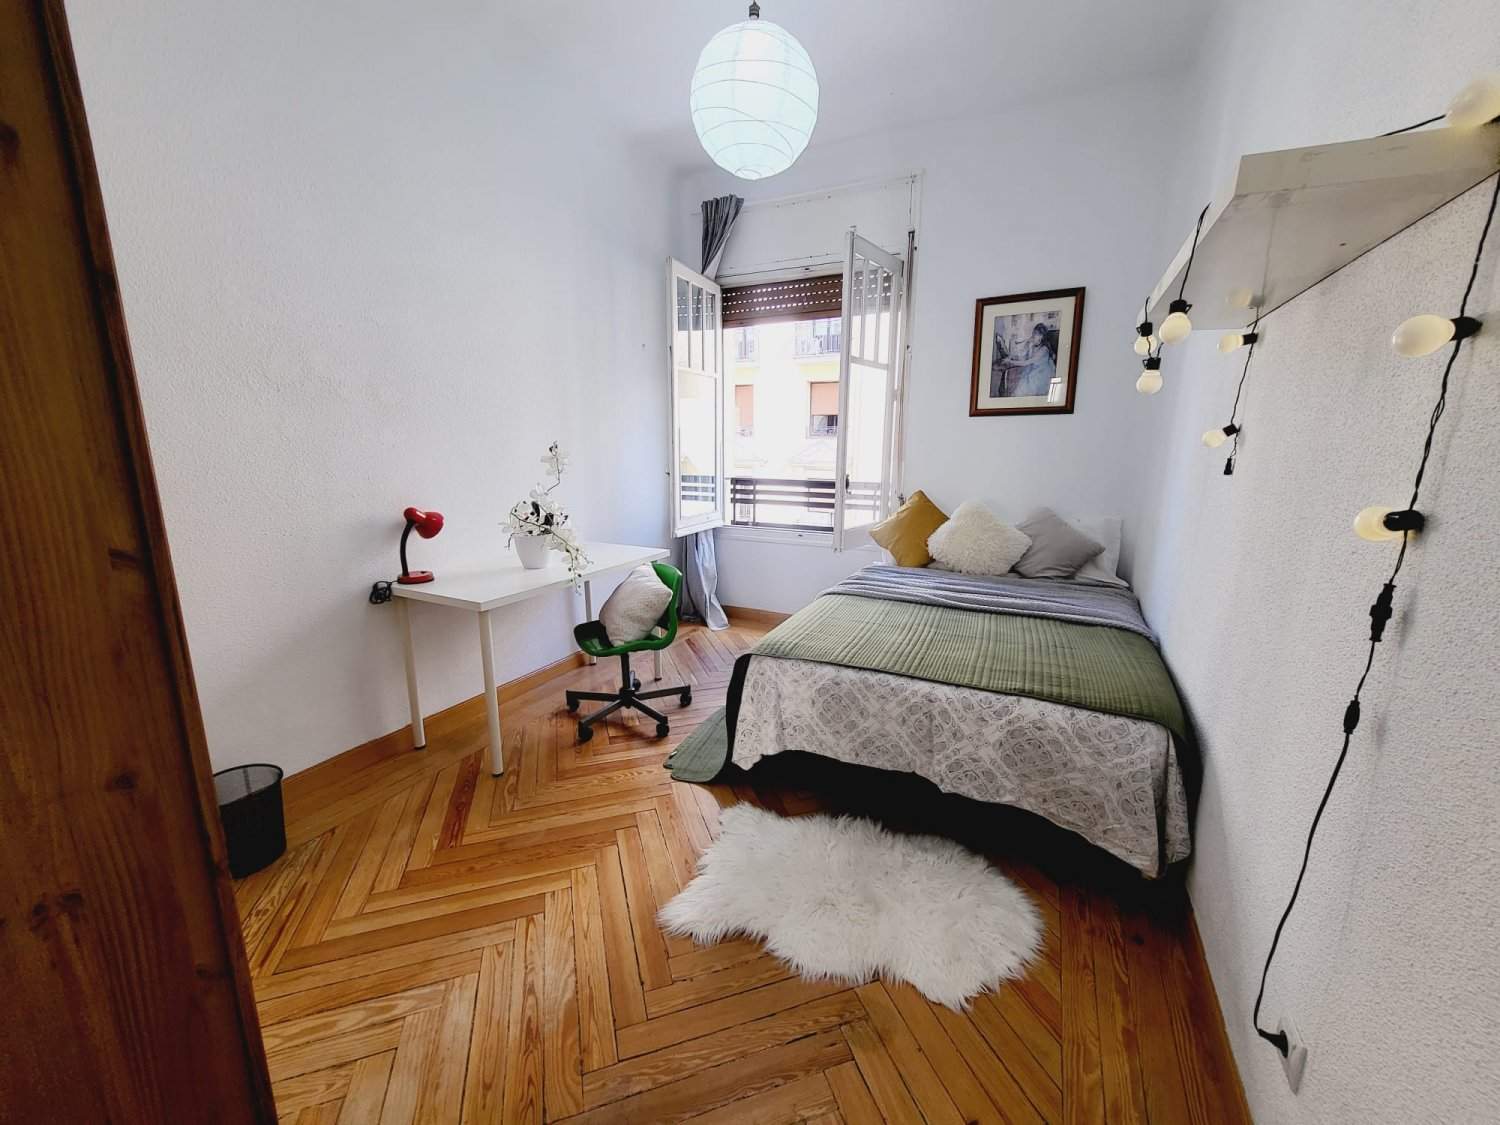 Habitaciones en piso compartido en Madrid - FRZB3